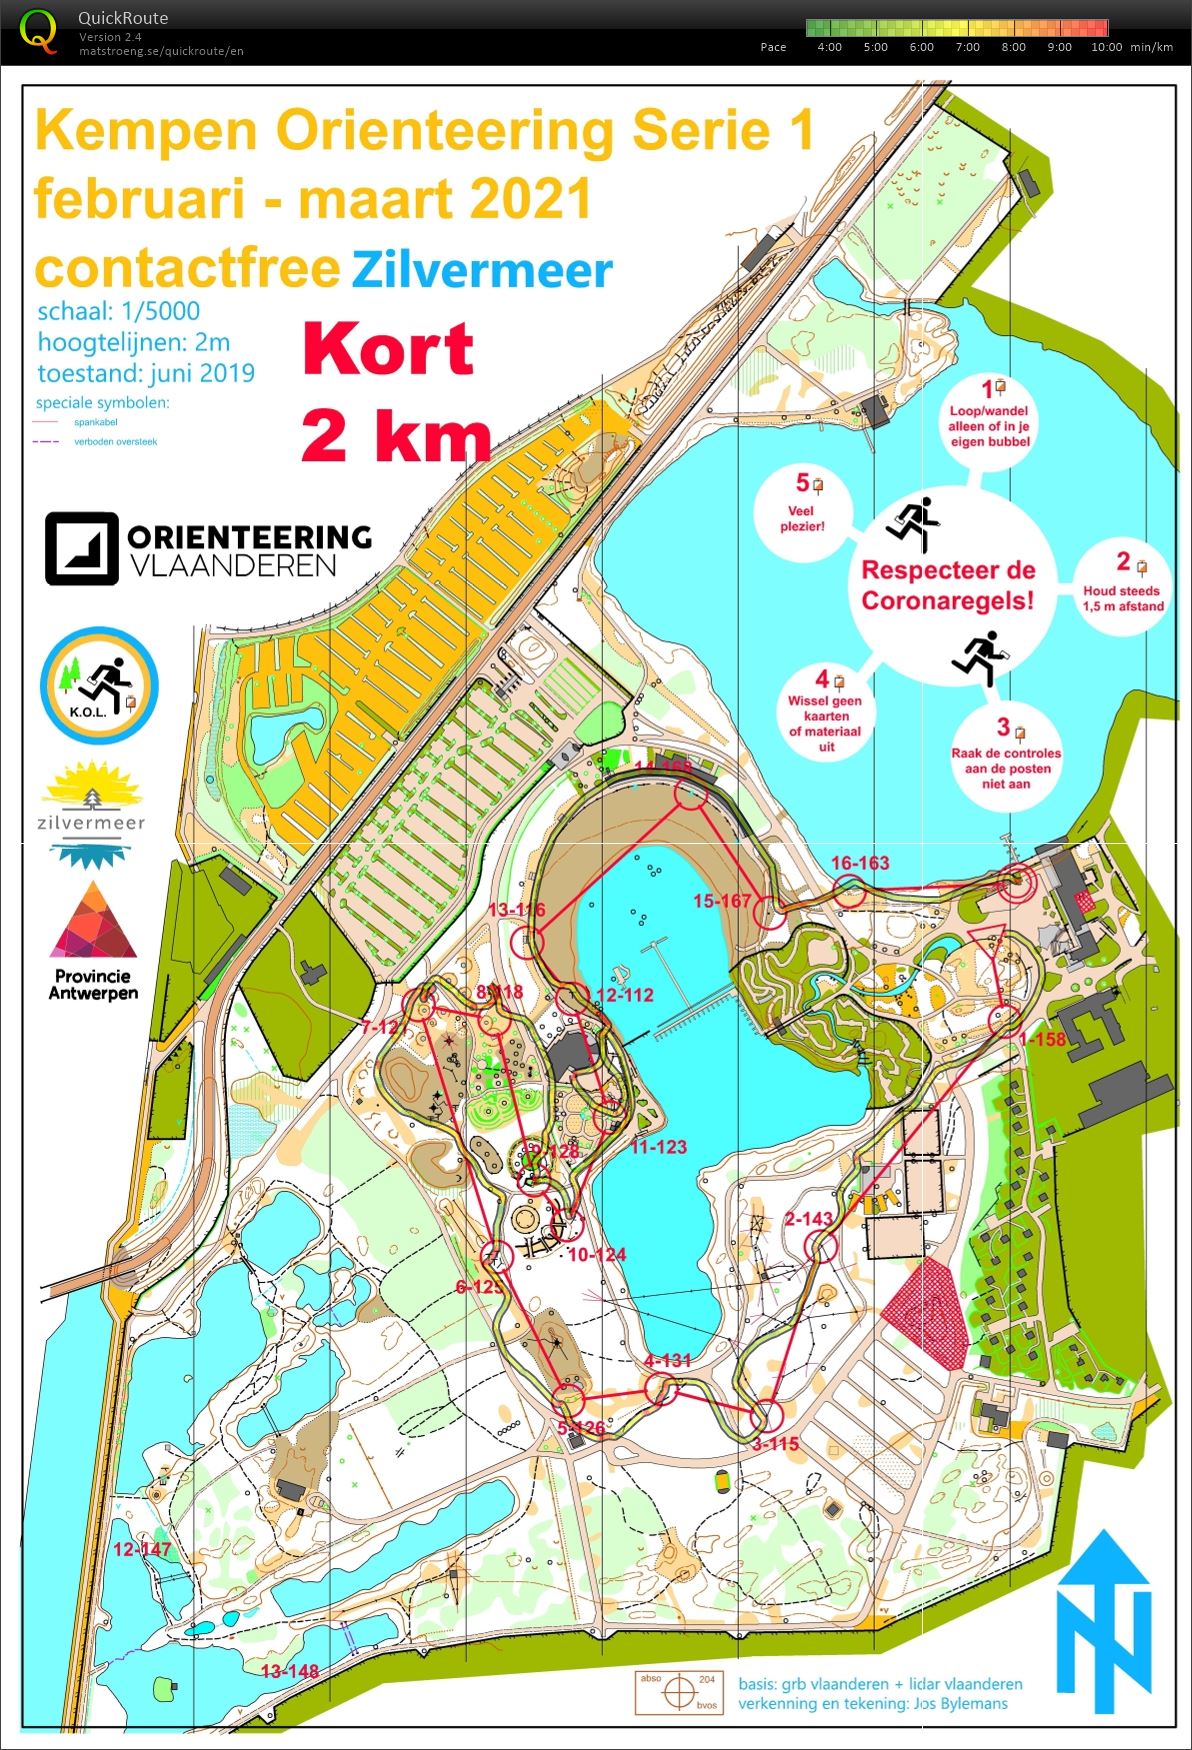 Kempen Orienteering Series - Zilvermeer - Kort (2021-03-07)